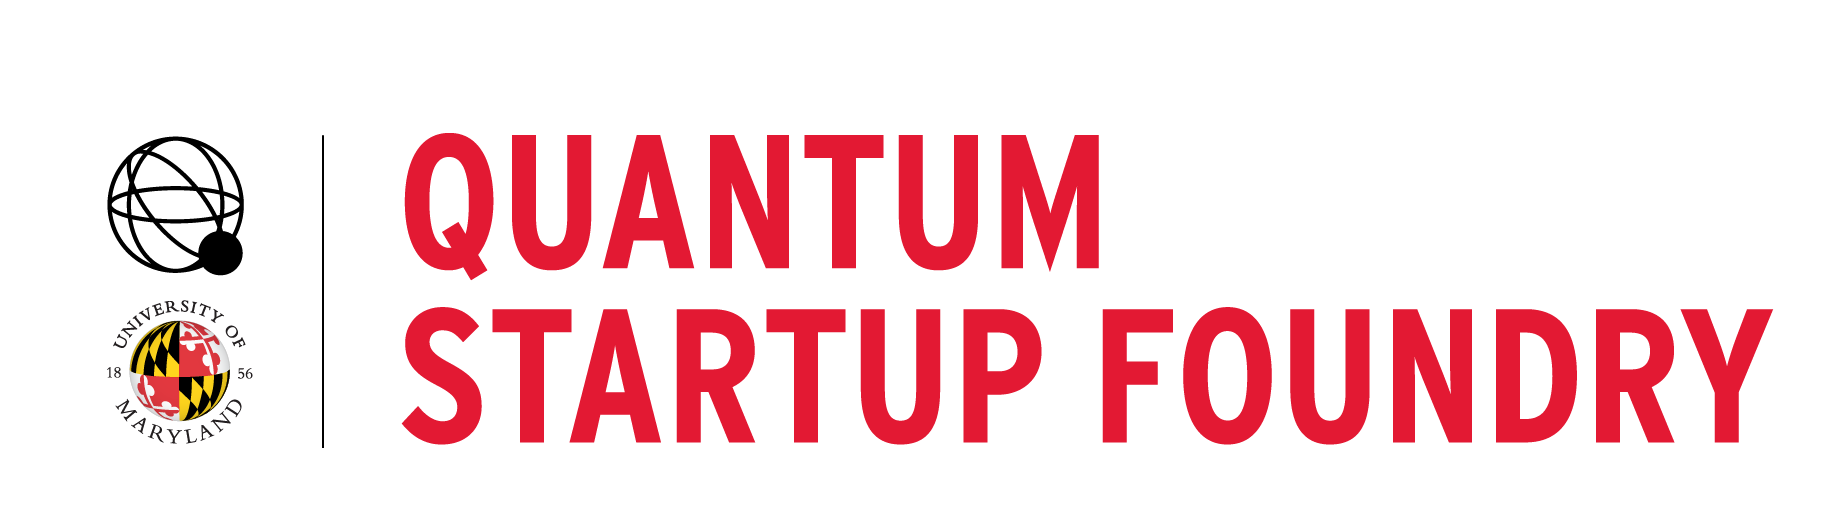 Quantum Startup Foundry logo